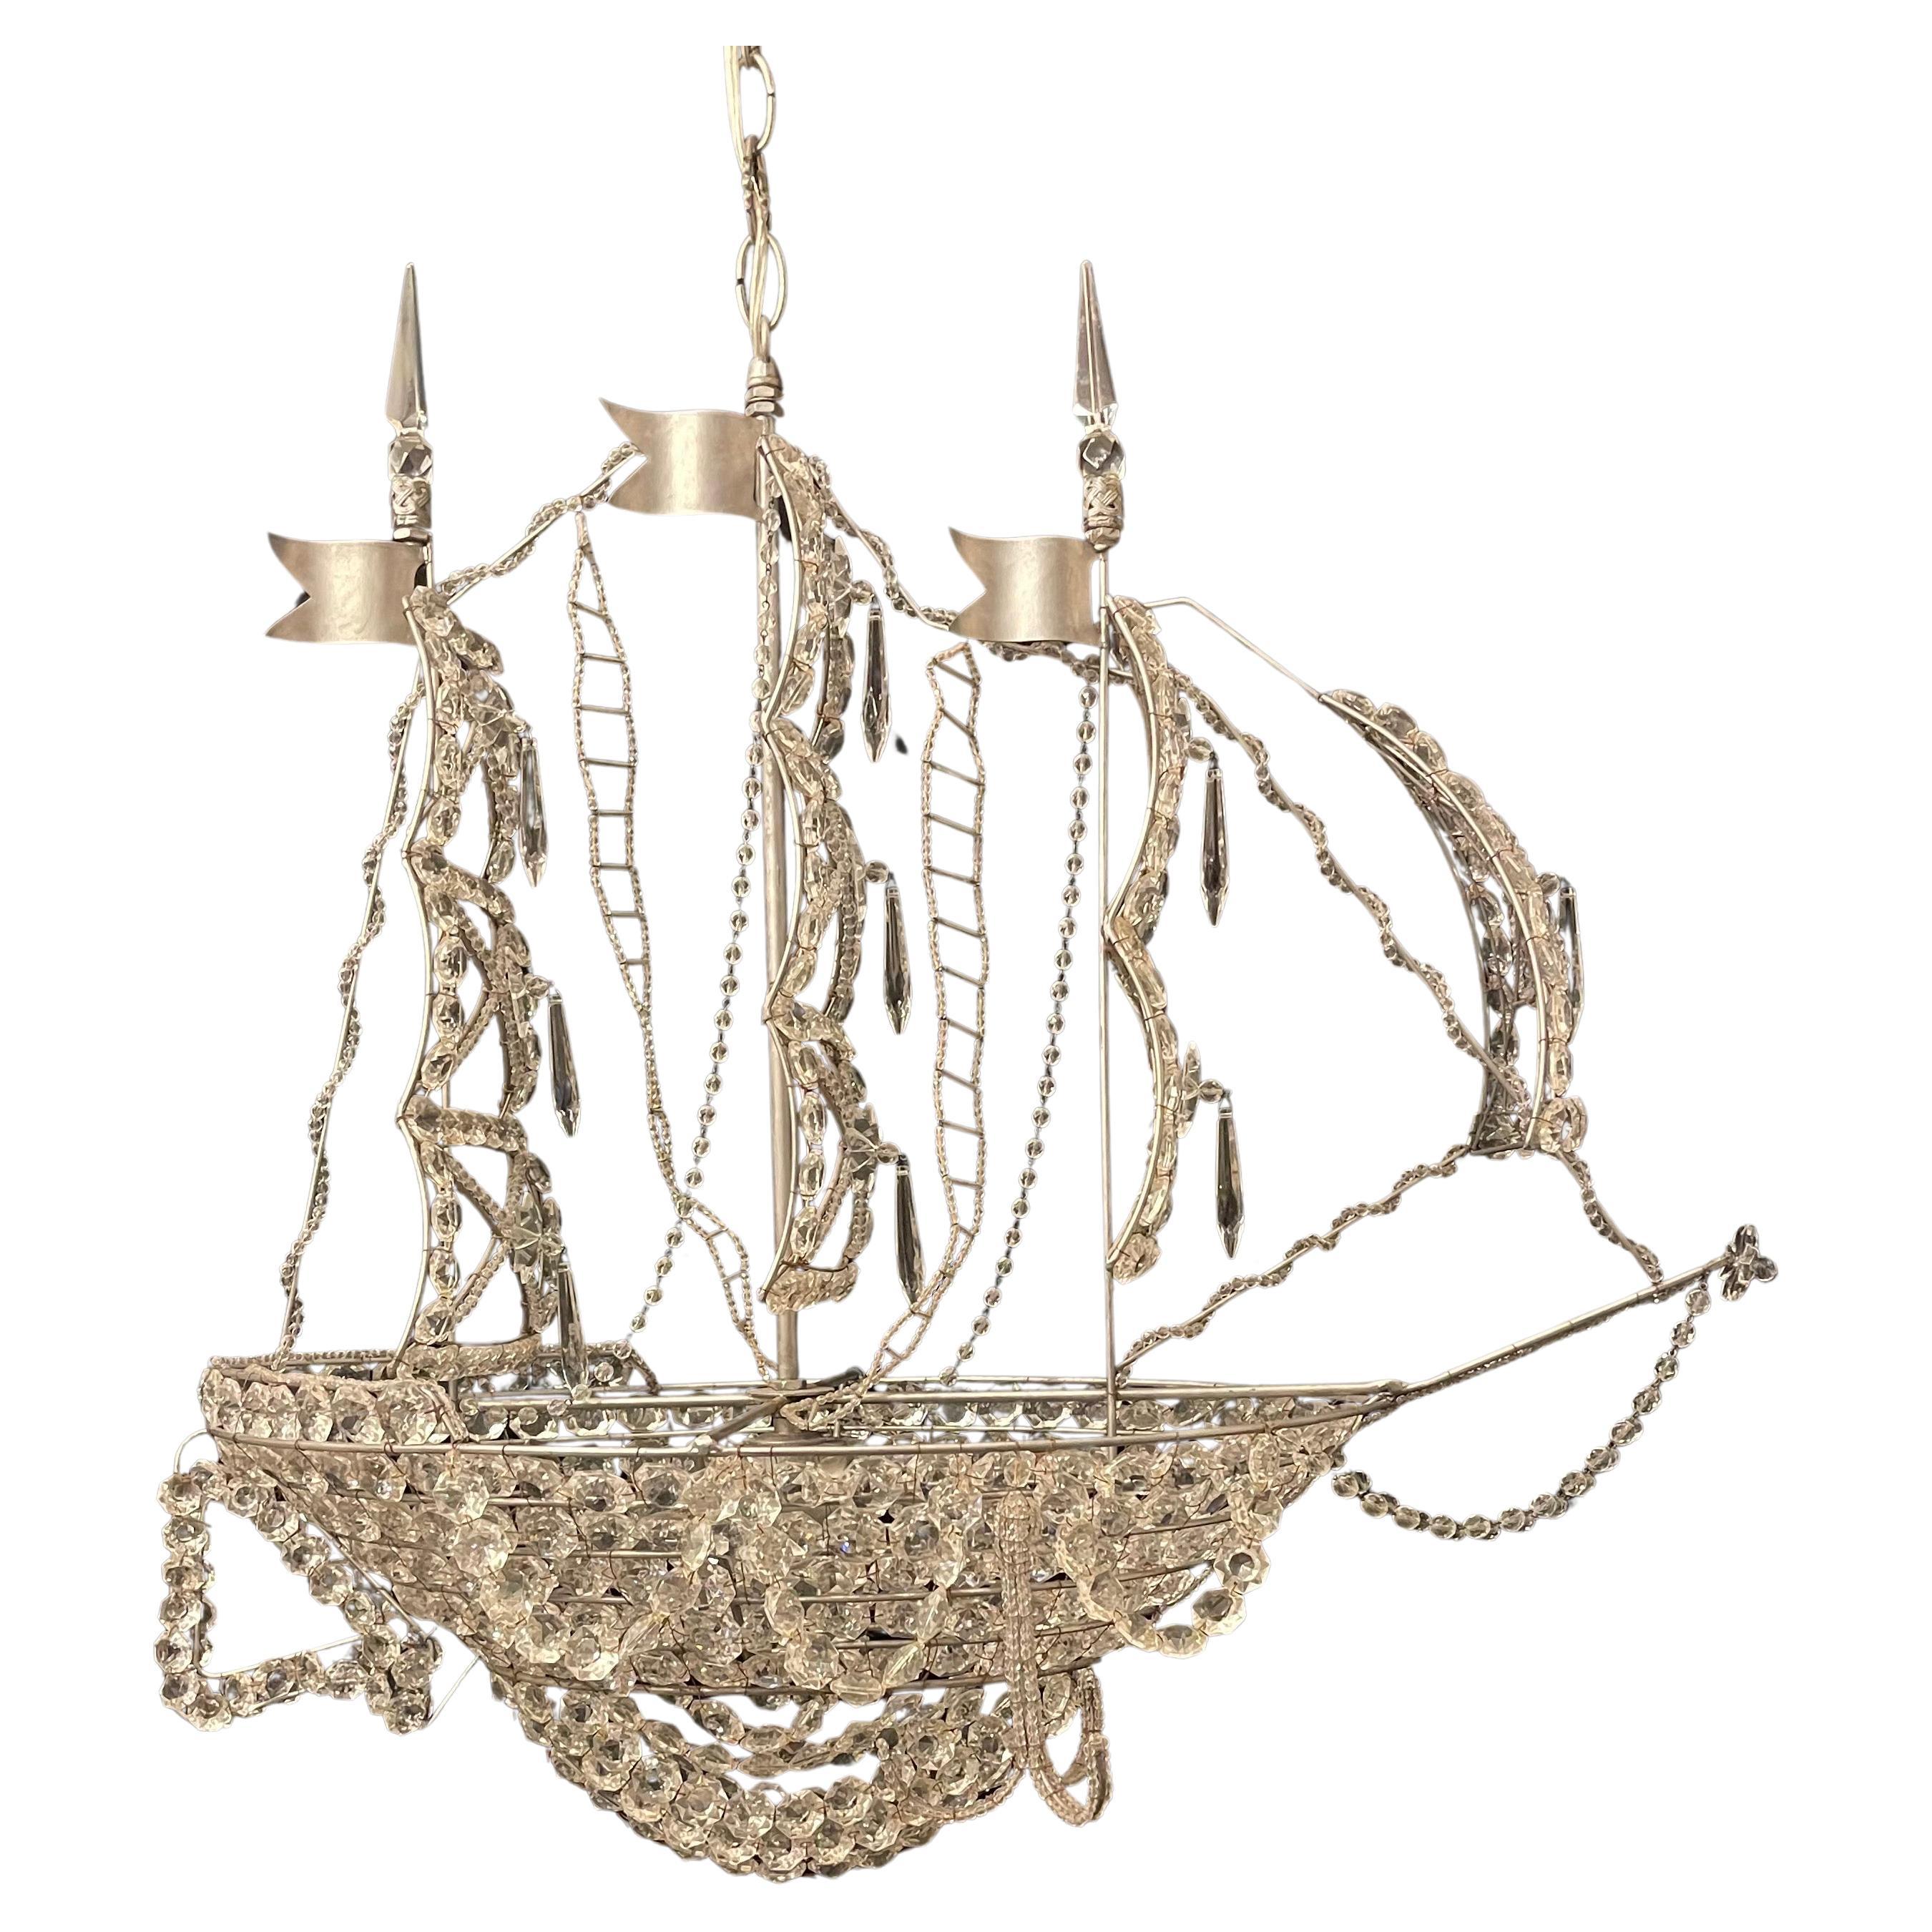 Magnifique lustre de bateau en cristal perlé doré d'origine italienne.